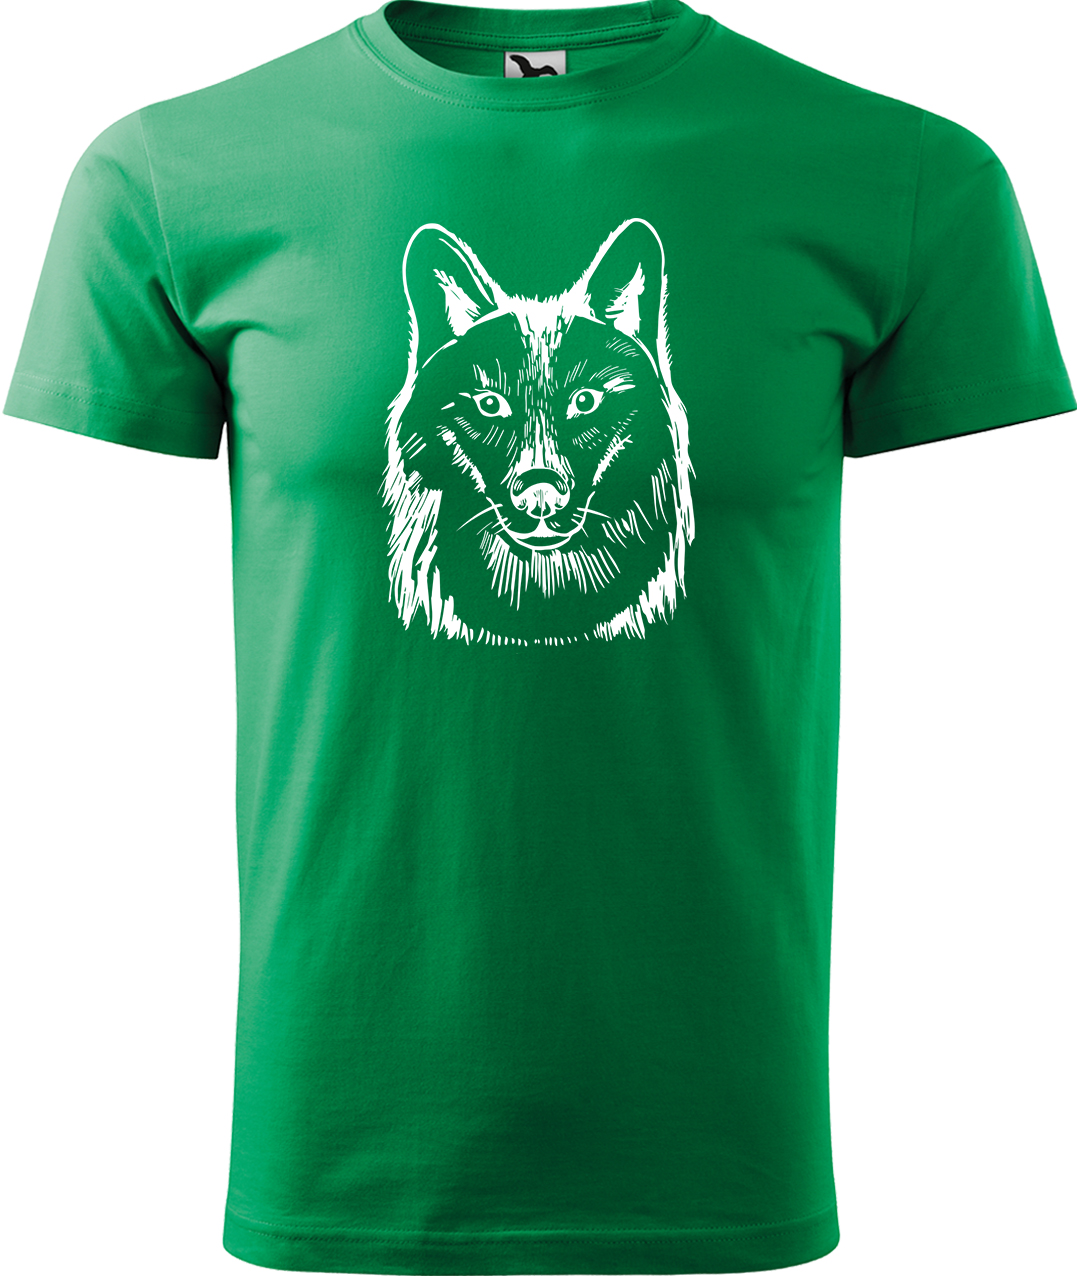 Pánské tričko s vlkem - Kresba vlka Velikost: S, Barva: Středně zelená (16), Střih: pánský